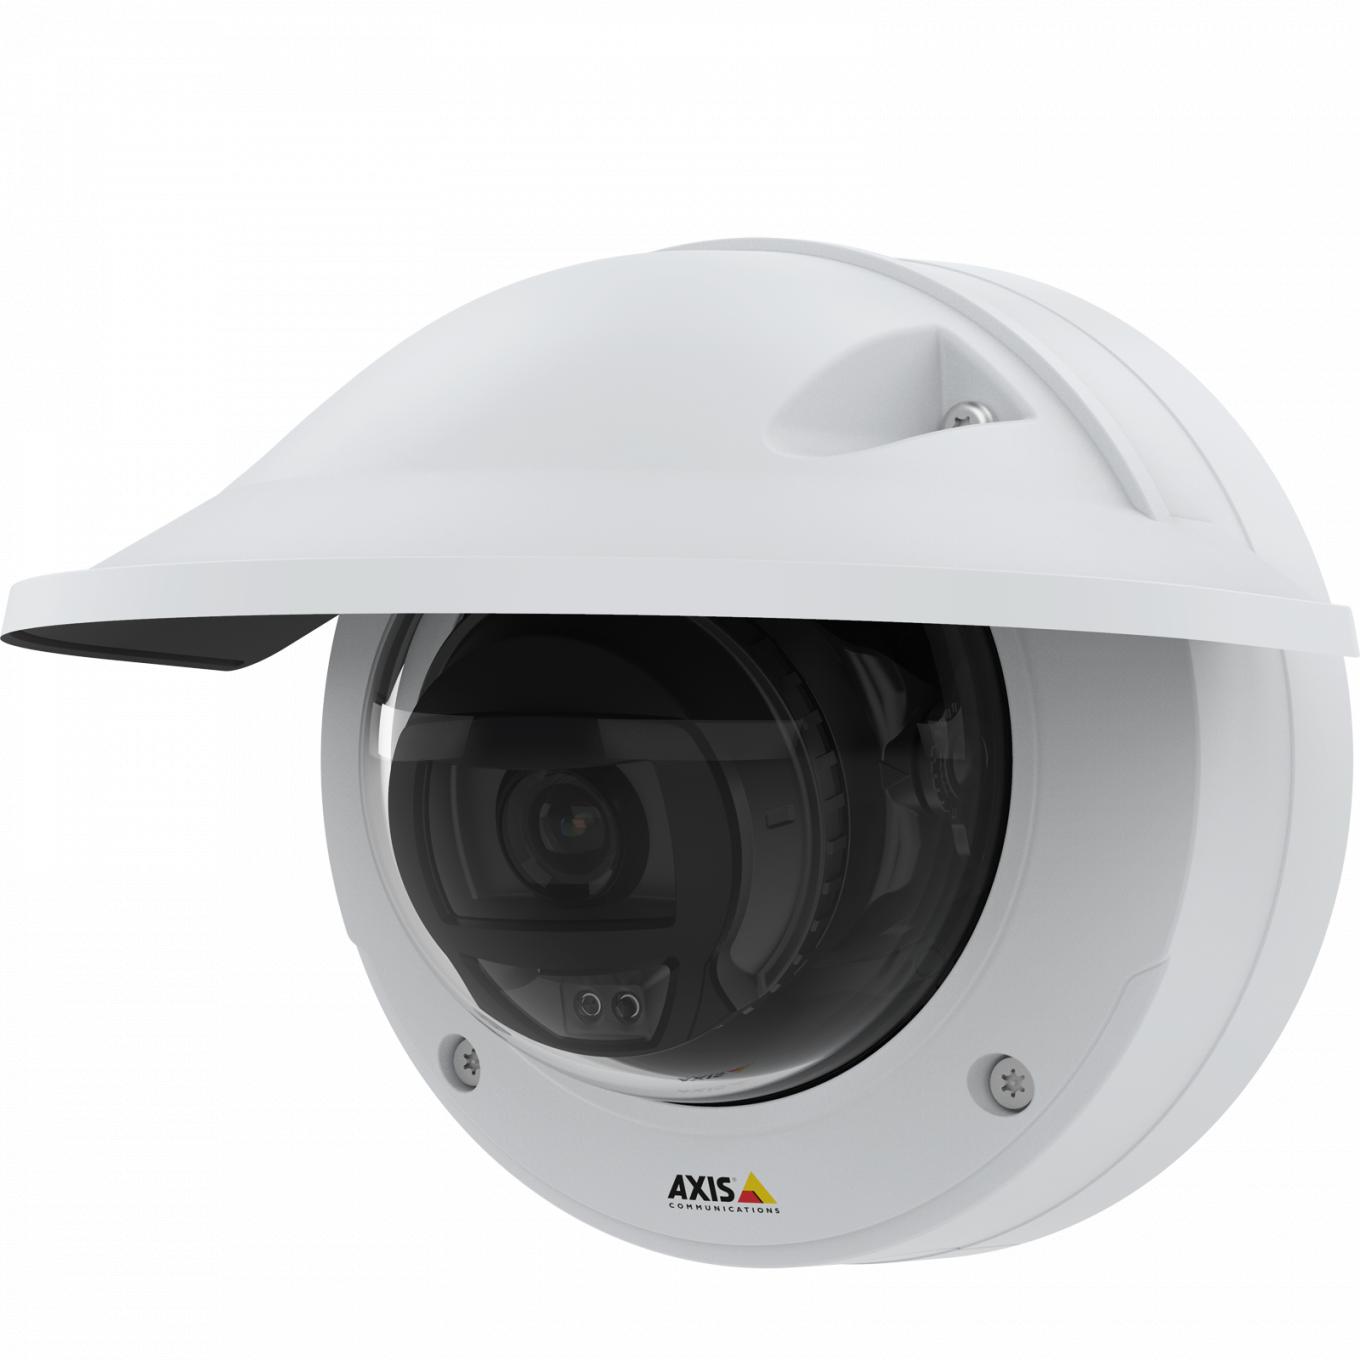 La caméra AXIS P3245 LVE IP Camera bénéficie d’une qualité vidéo HDTV 1080p. La caméra est vue de son côté gauche et dispose d’une protection étanche.